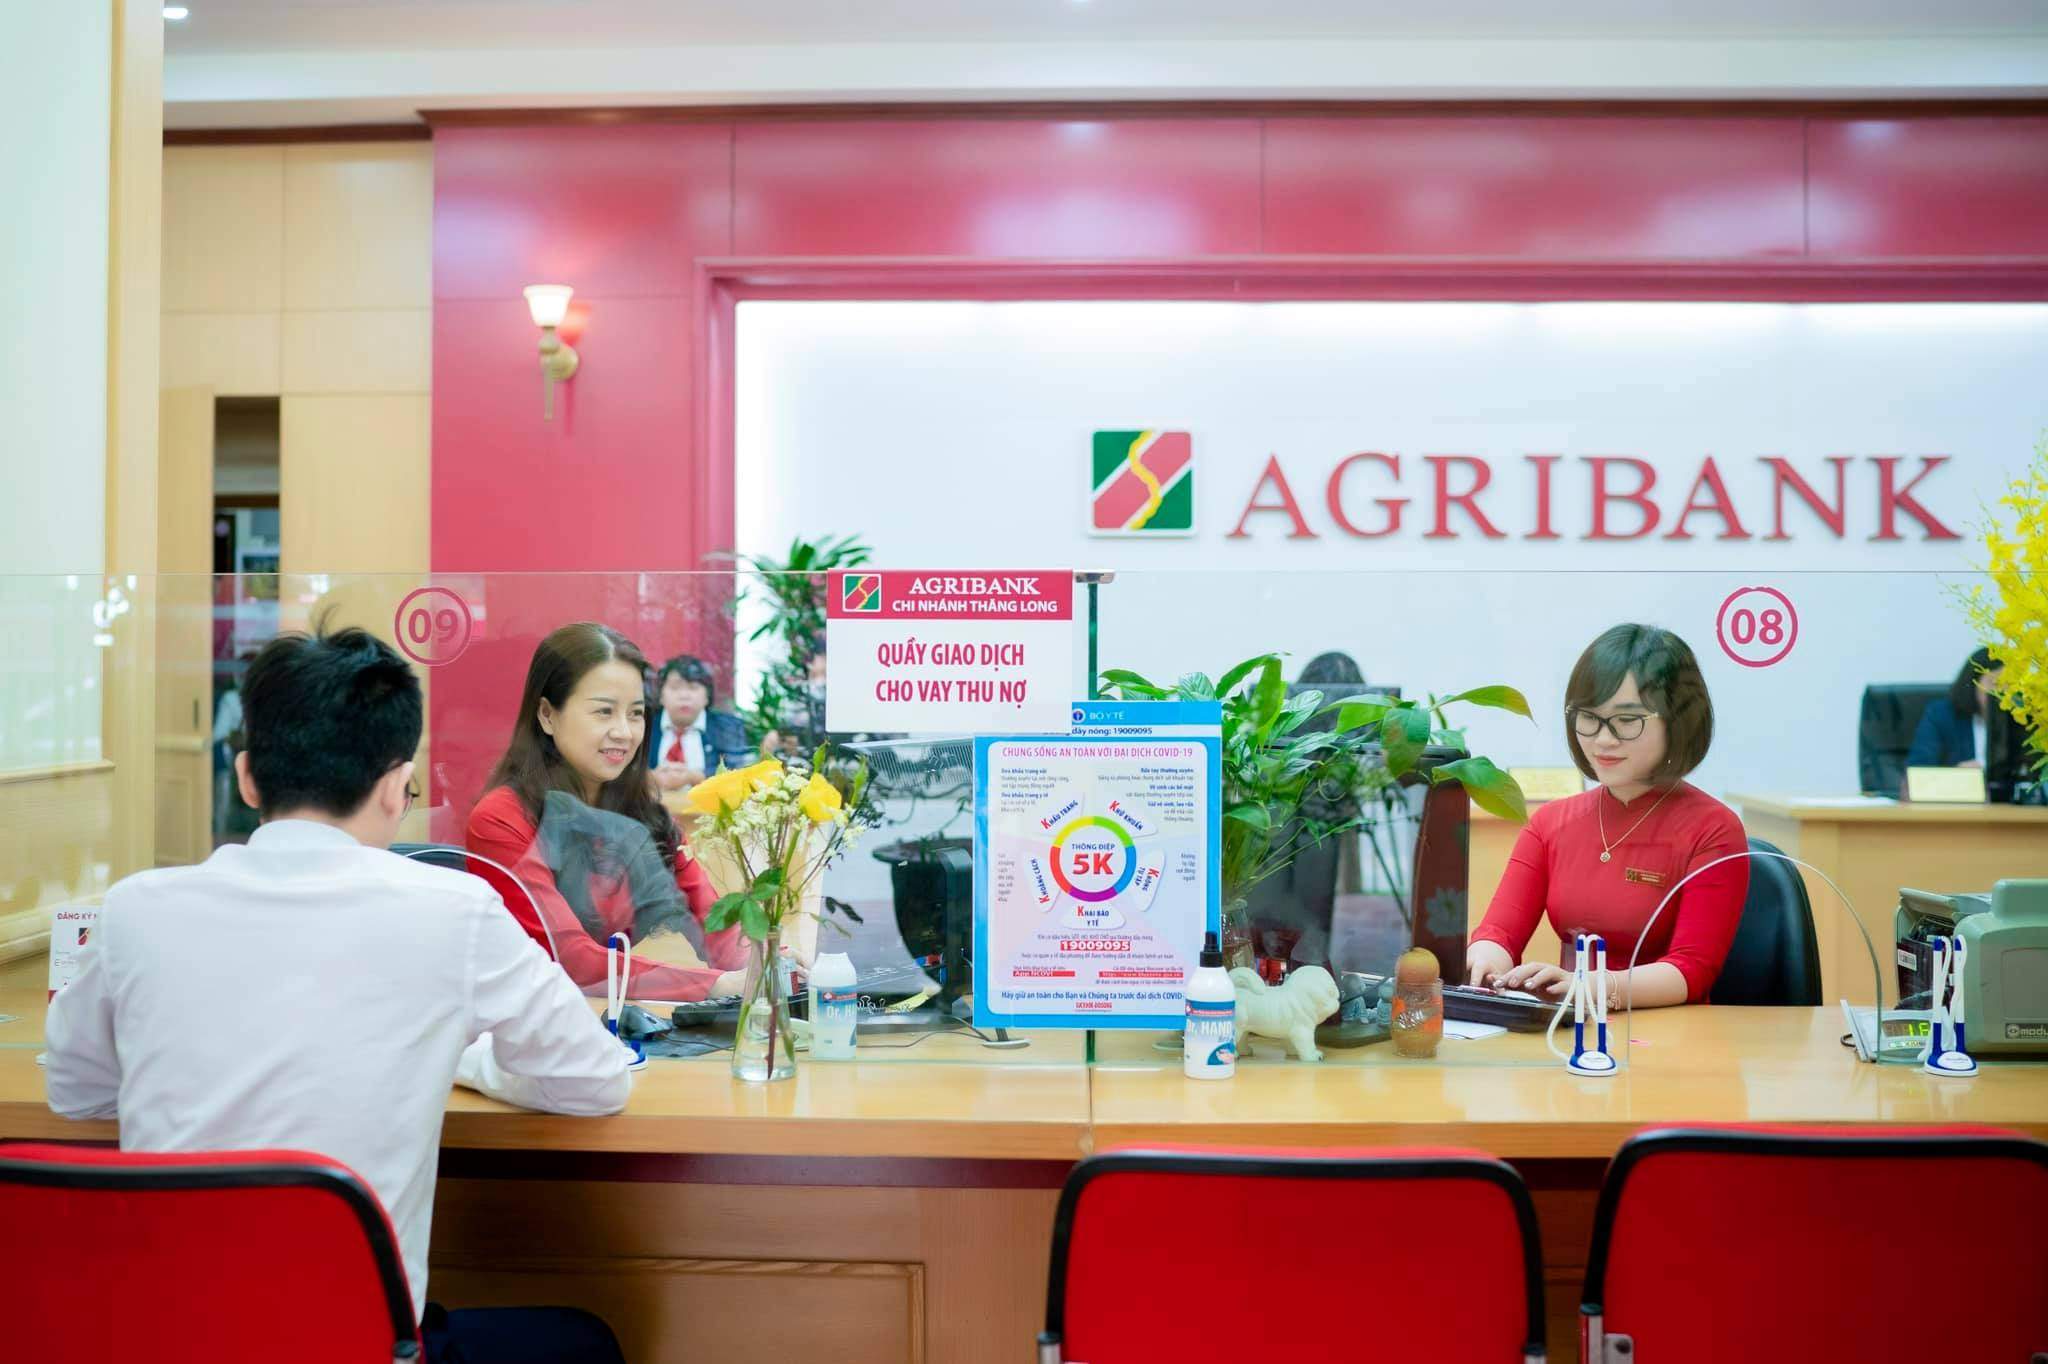 Quy trình thủ tục vay thế chấp ngân hàng Agribank theo quy định mới nhất